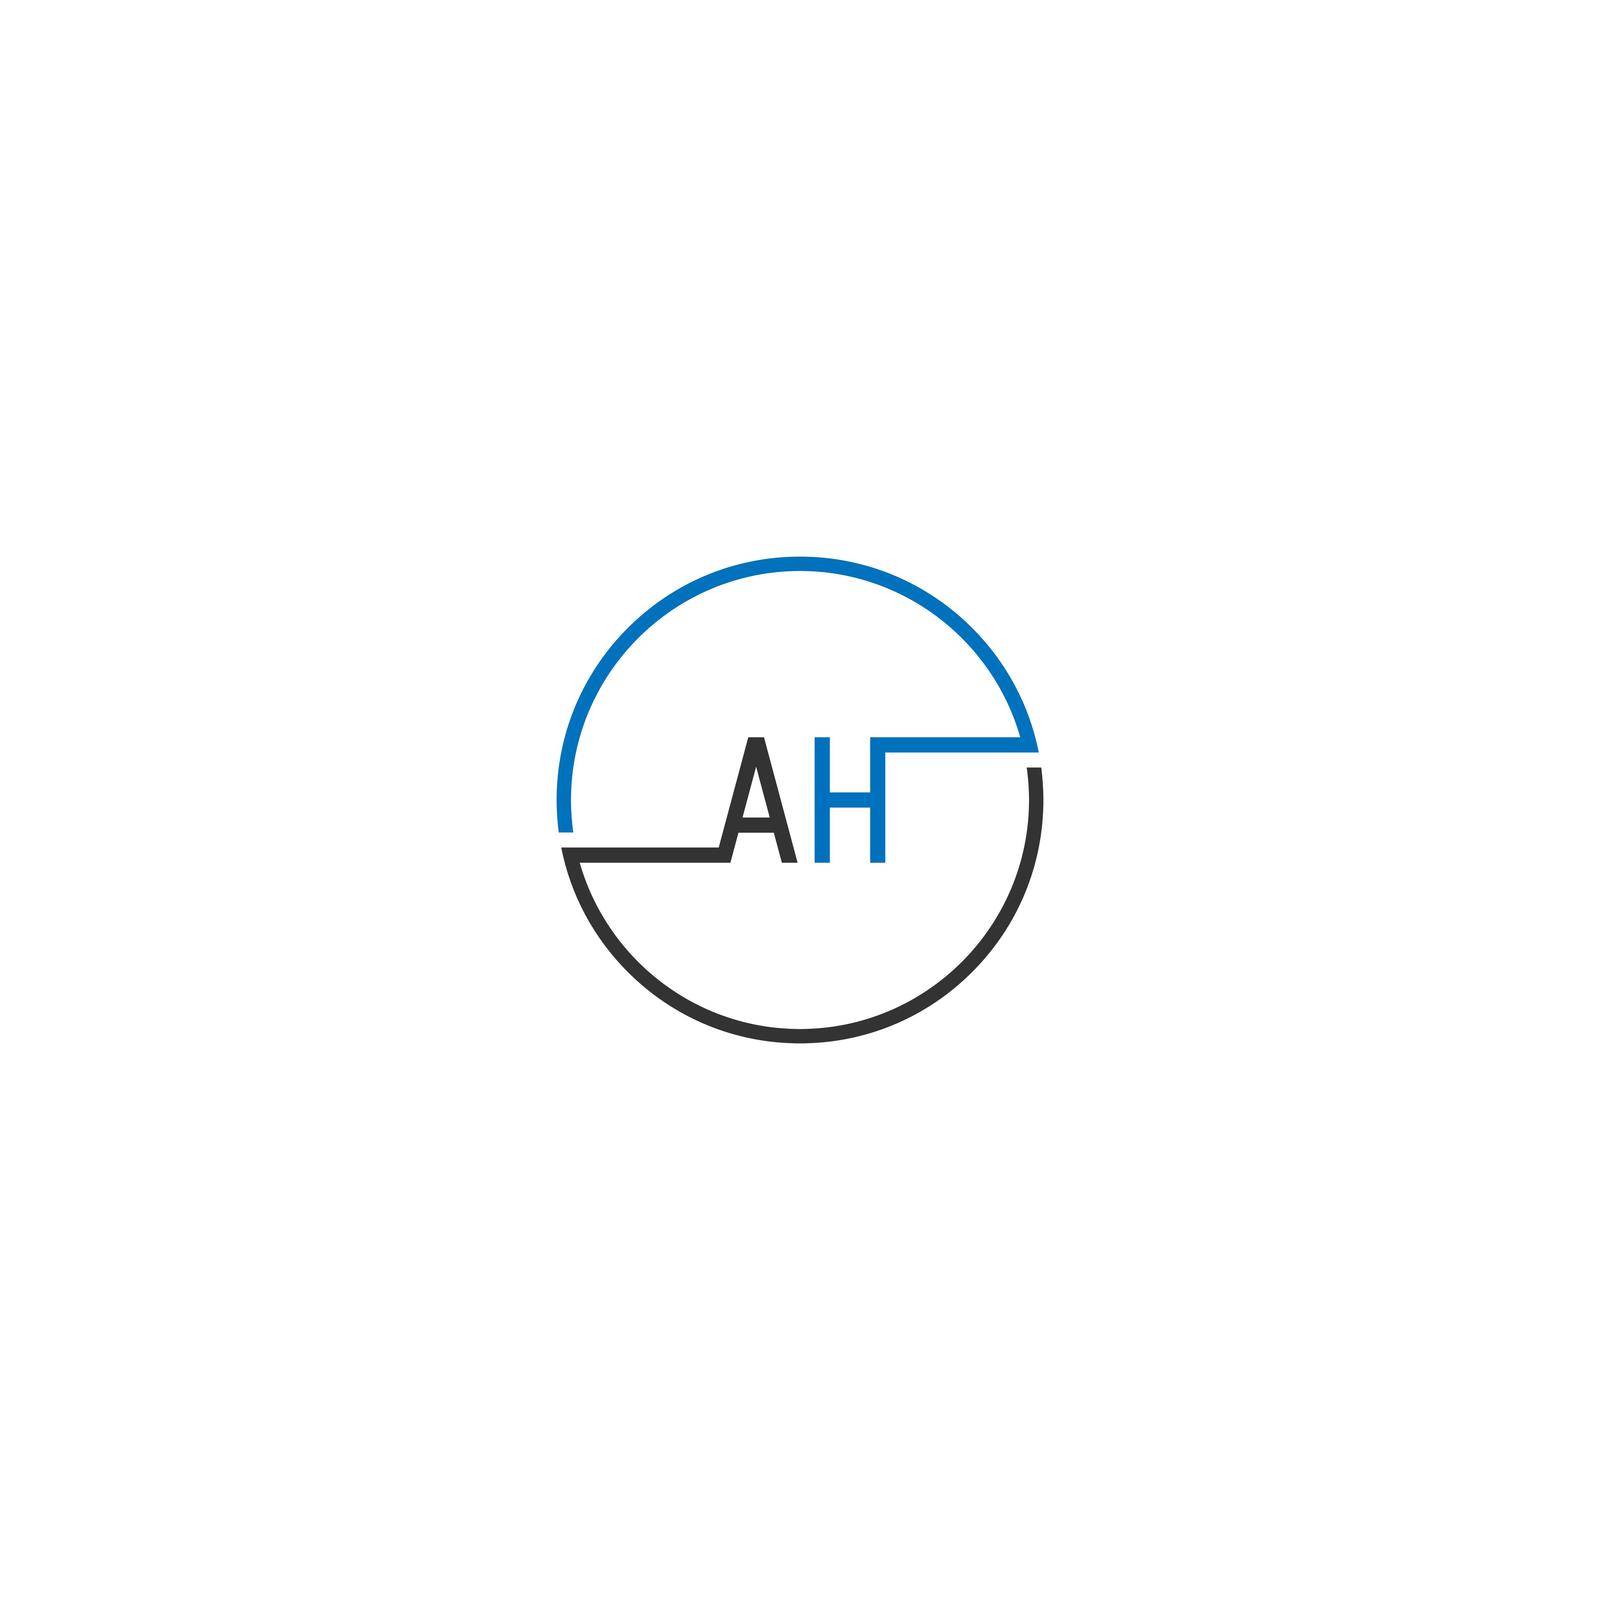 AH logo letter design concept in black and blue color